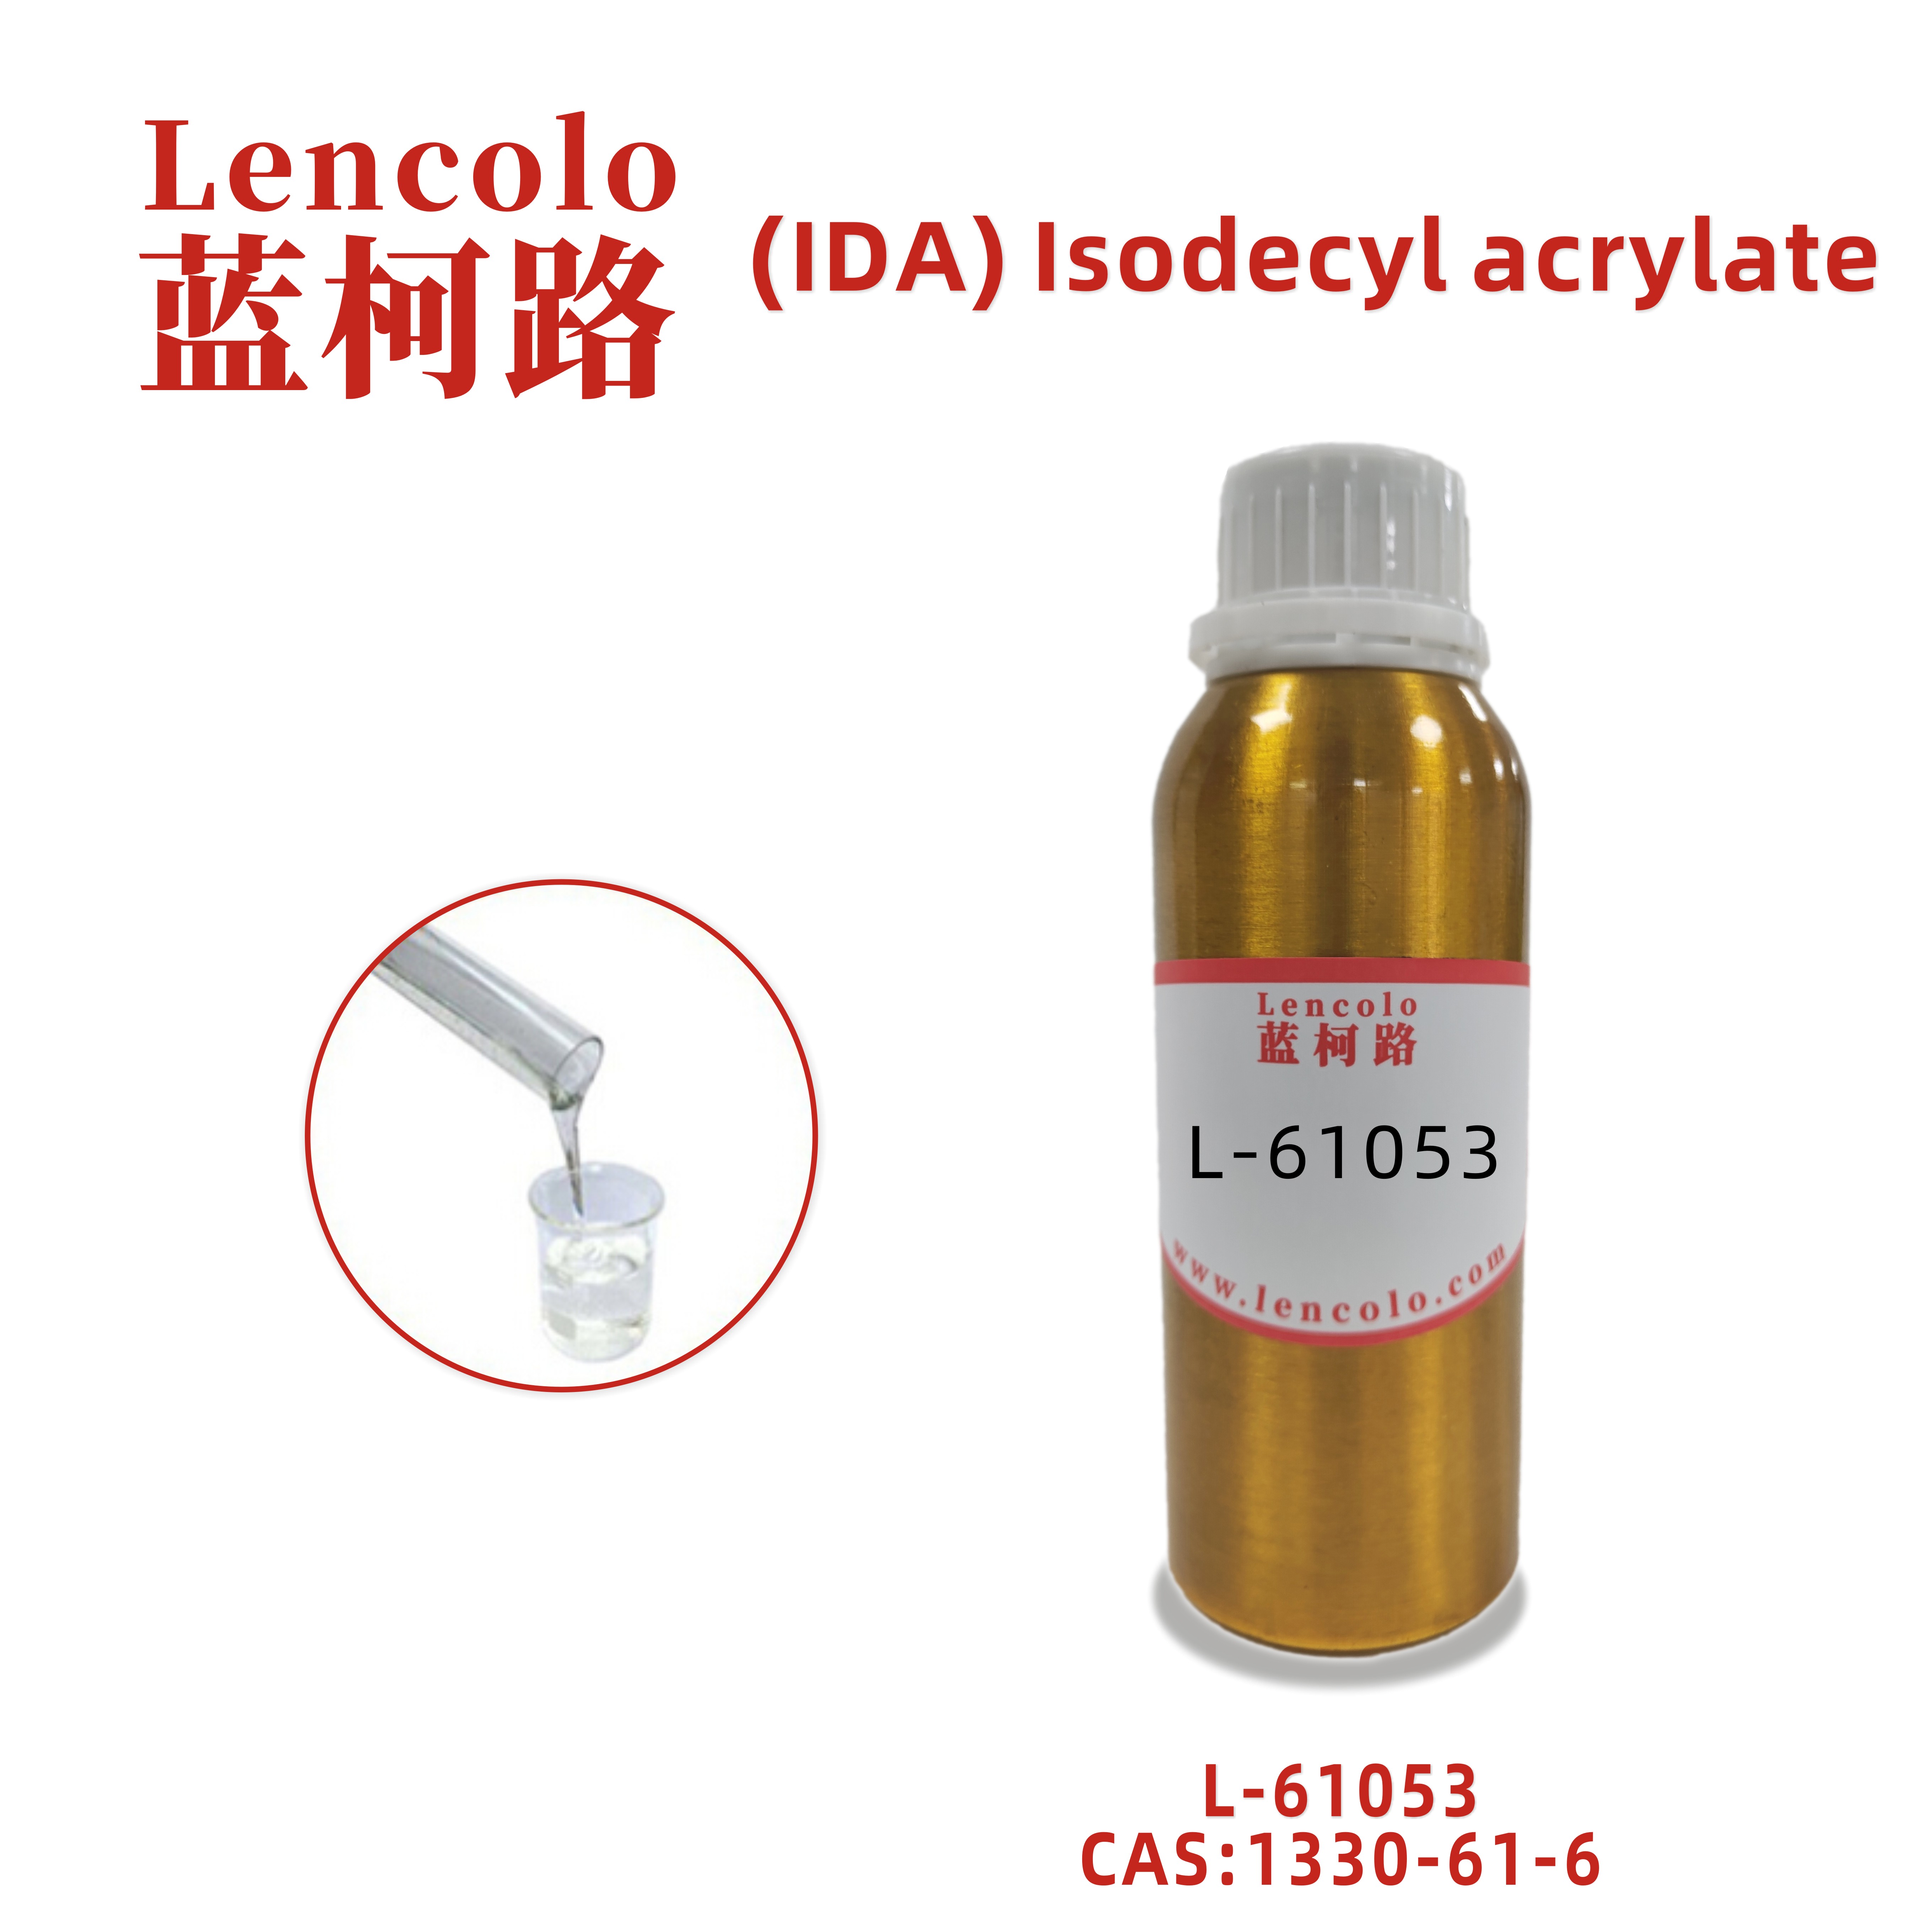 L-61053 (IDA) Isodecyl acrylate